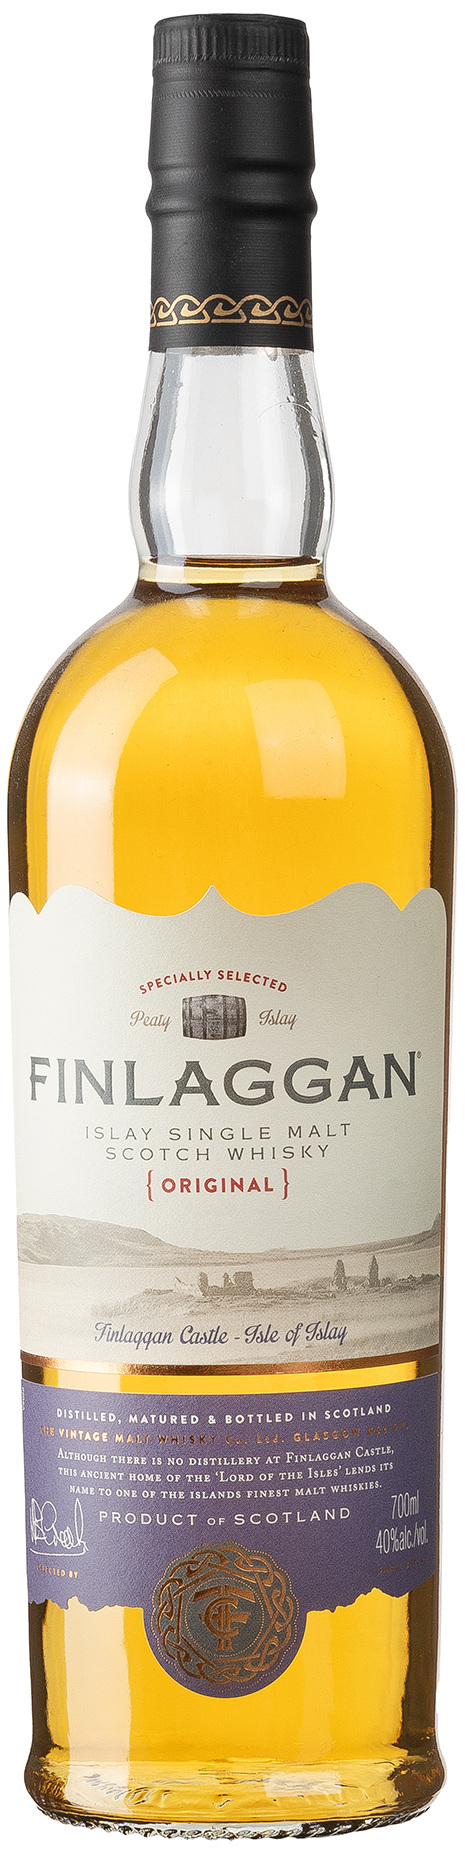 Finlaggan The Original Islay Single Malt Scotch Whisky 40% vol. 0,7L